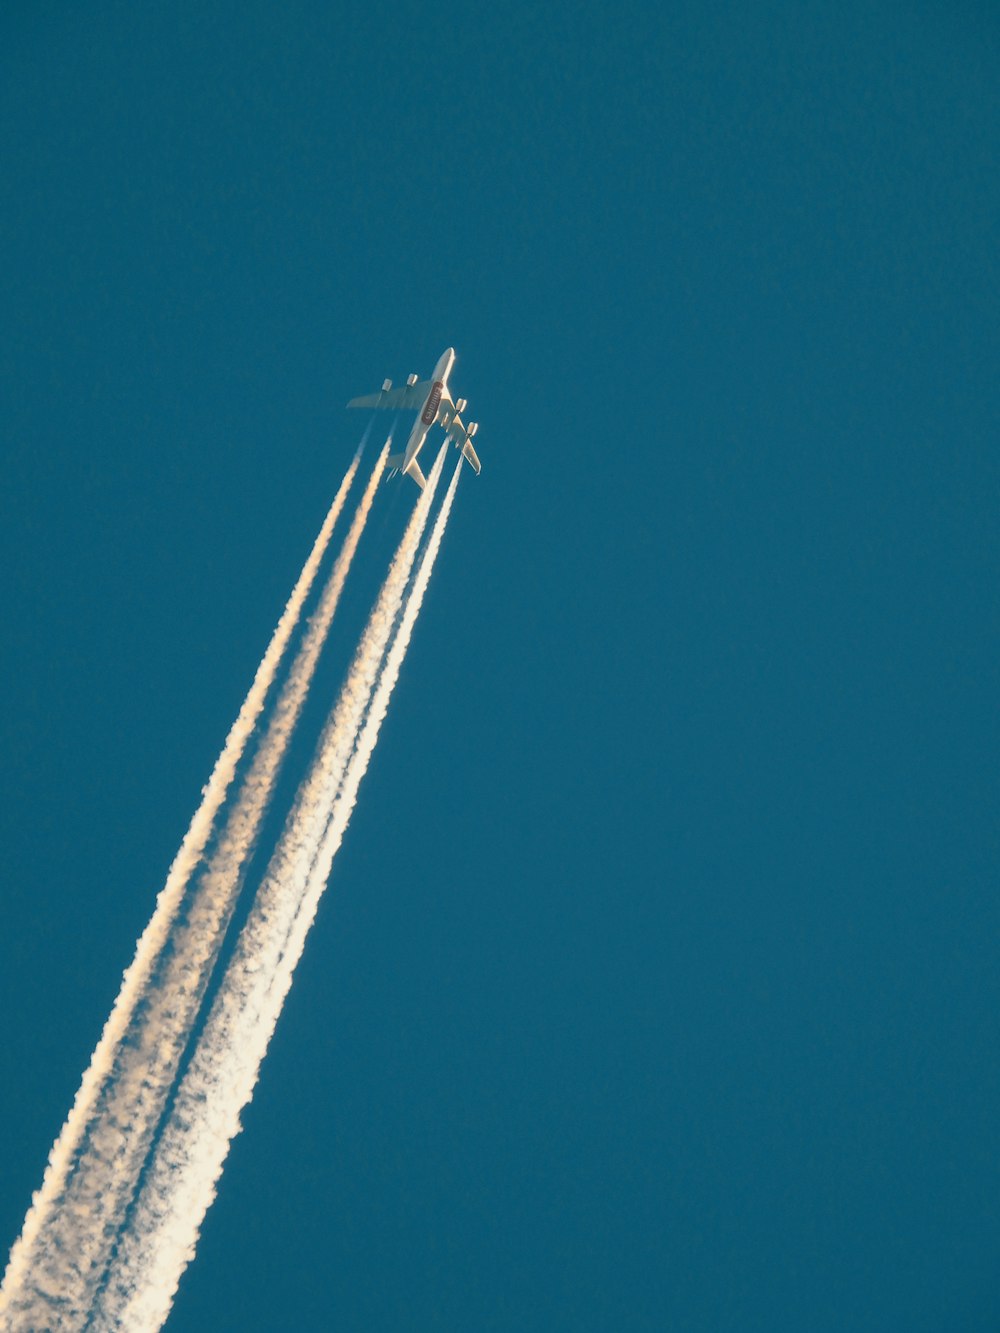 Ein Flugzeug, das am Himmel fliegt und eine Rauchspur hinterlässt